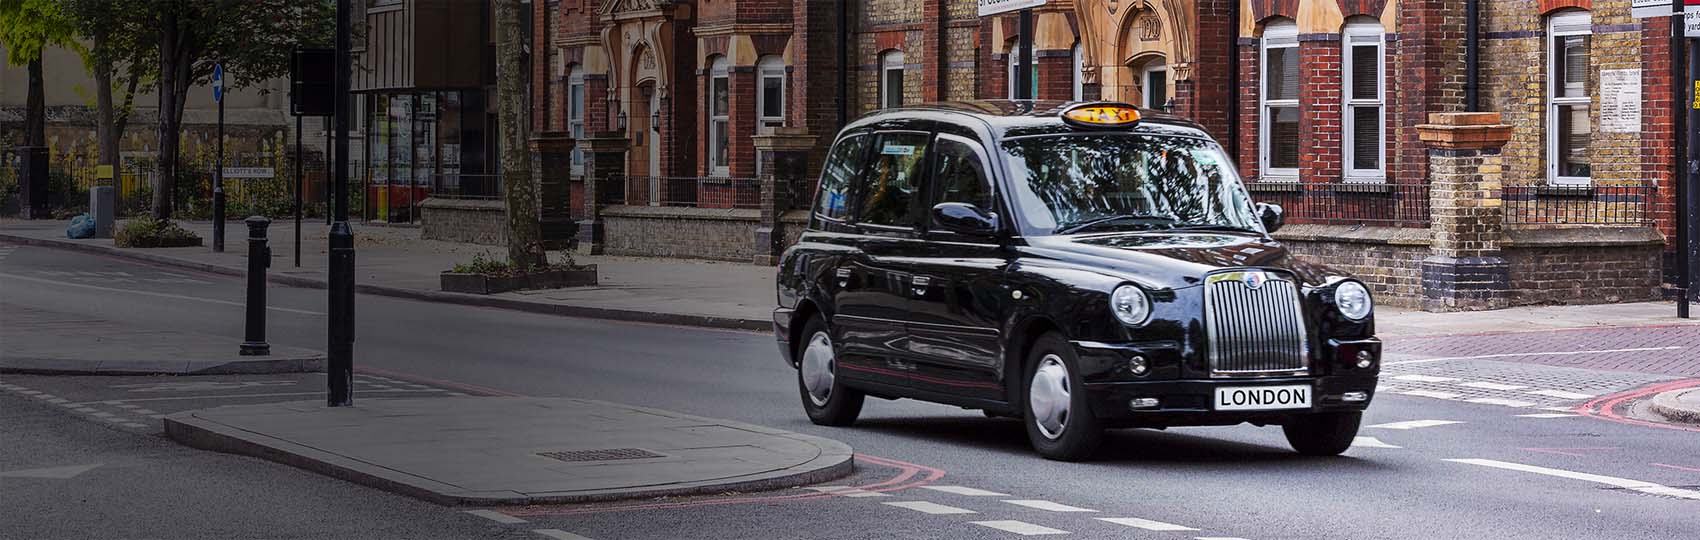 Noticias del sector del taxi y la movilidad en Reino Unido.  Mantente informado de todas las noticias del taxi de Reino Unido en el grupo de Facebook de Todo Taxi.